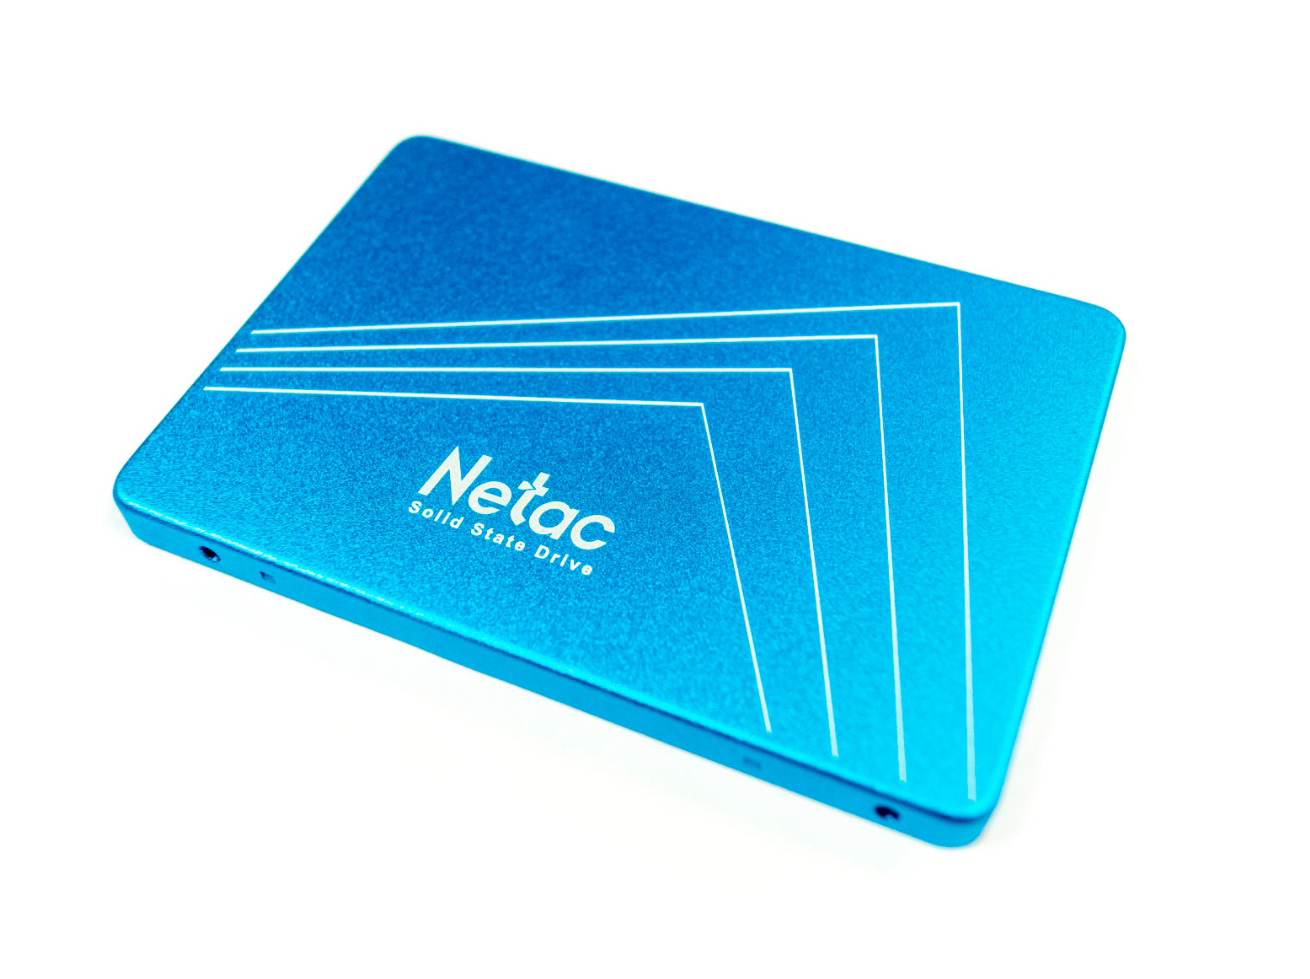 S 535. SSD Netac n535s 480gb. 480gb Netac nt01n535s-480g-s3x n535s 2.5" SSD SATA III. Nt01n535s-480g-s3x. Netac 480 GB.